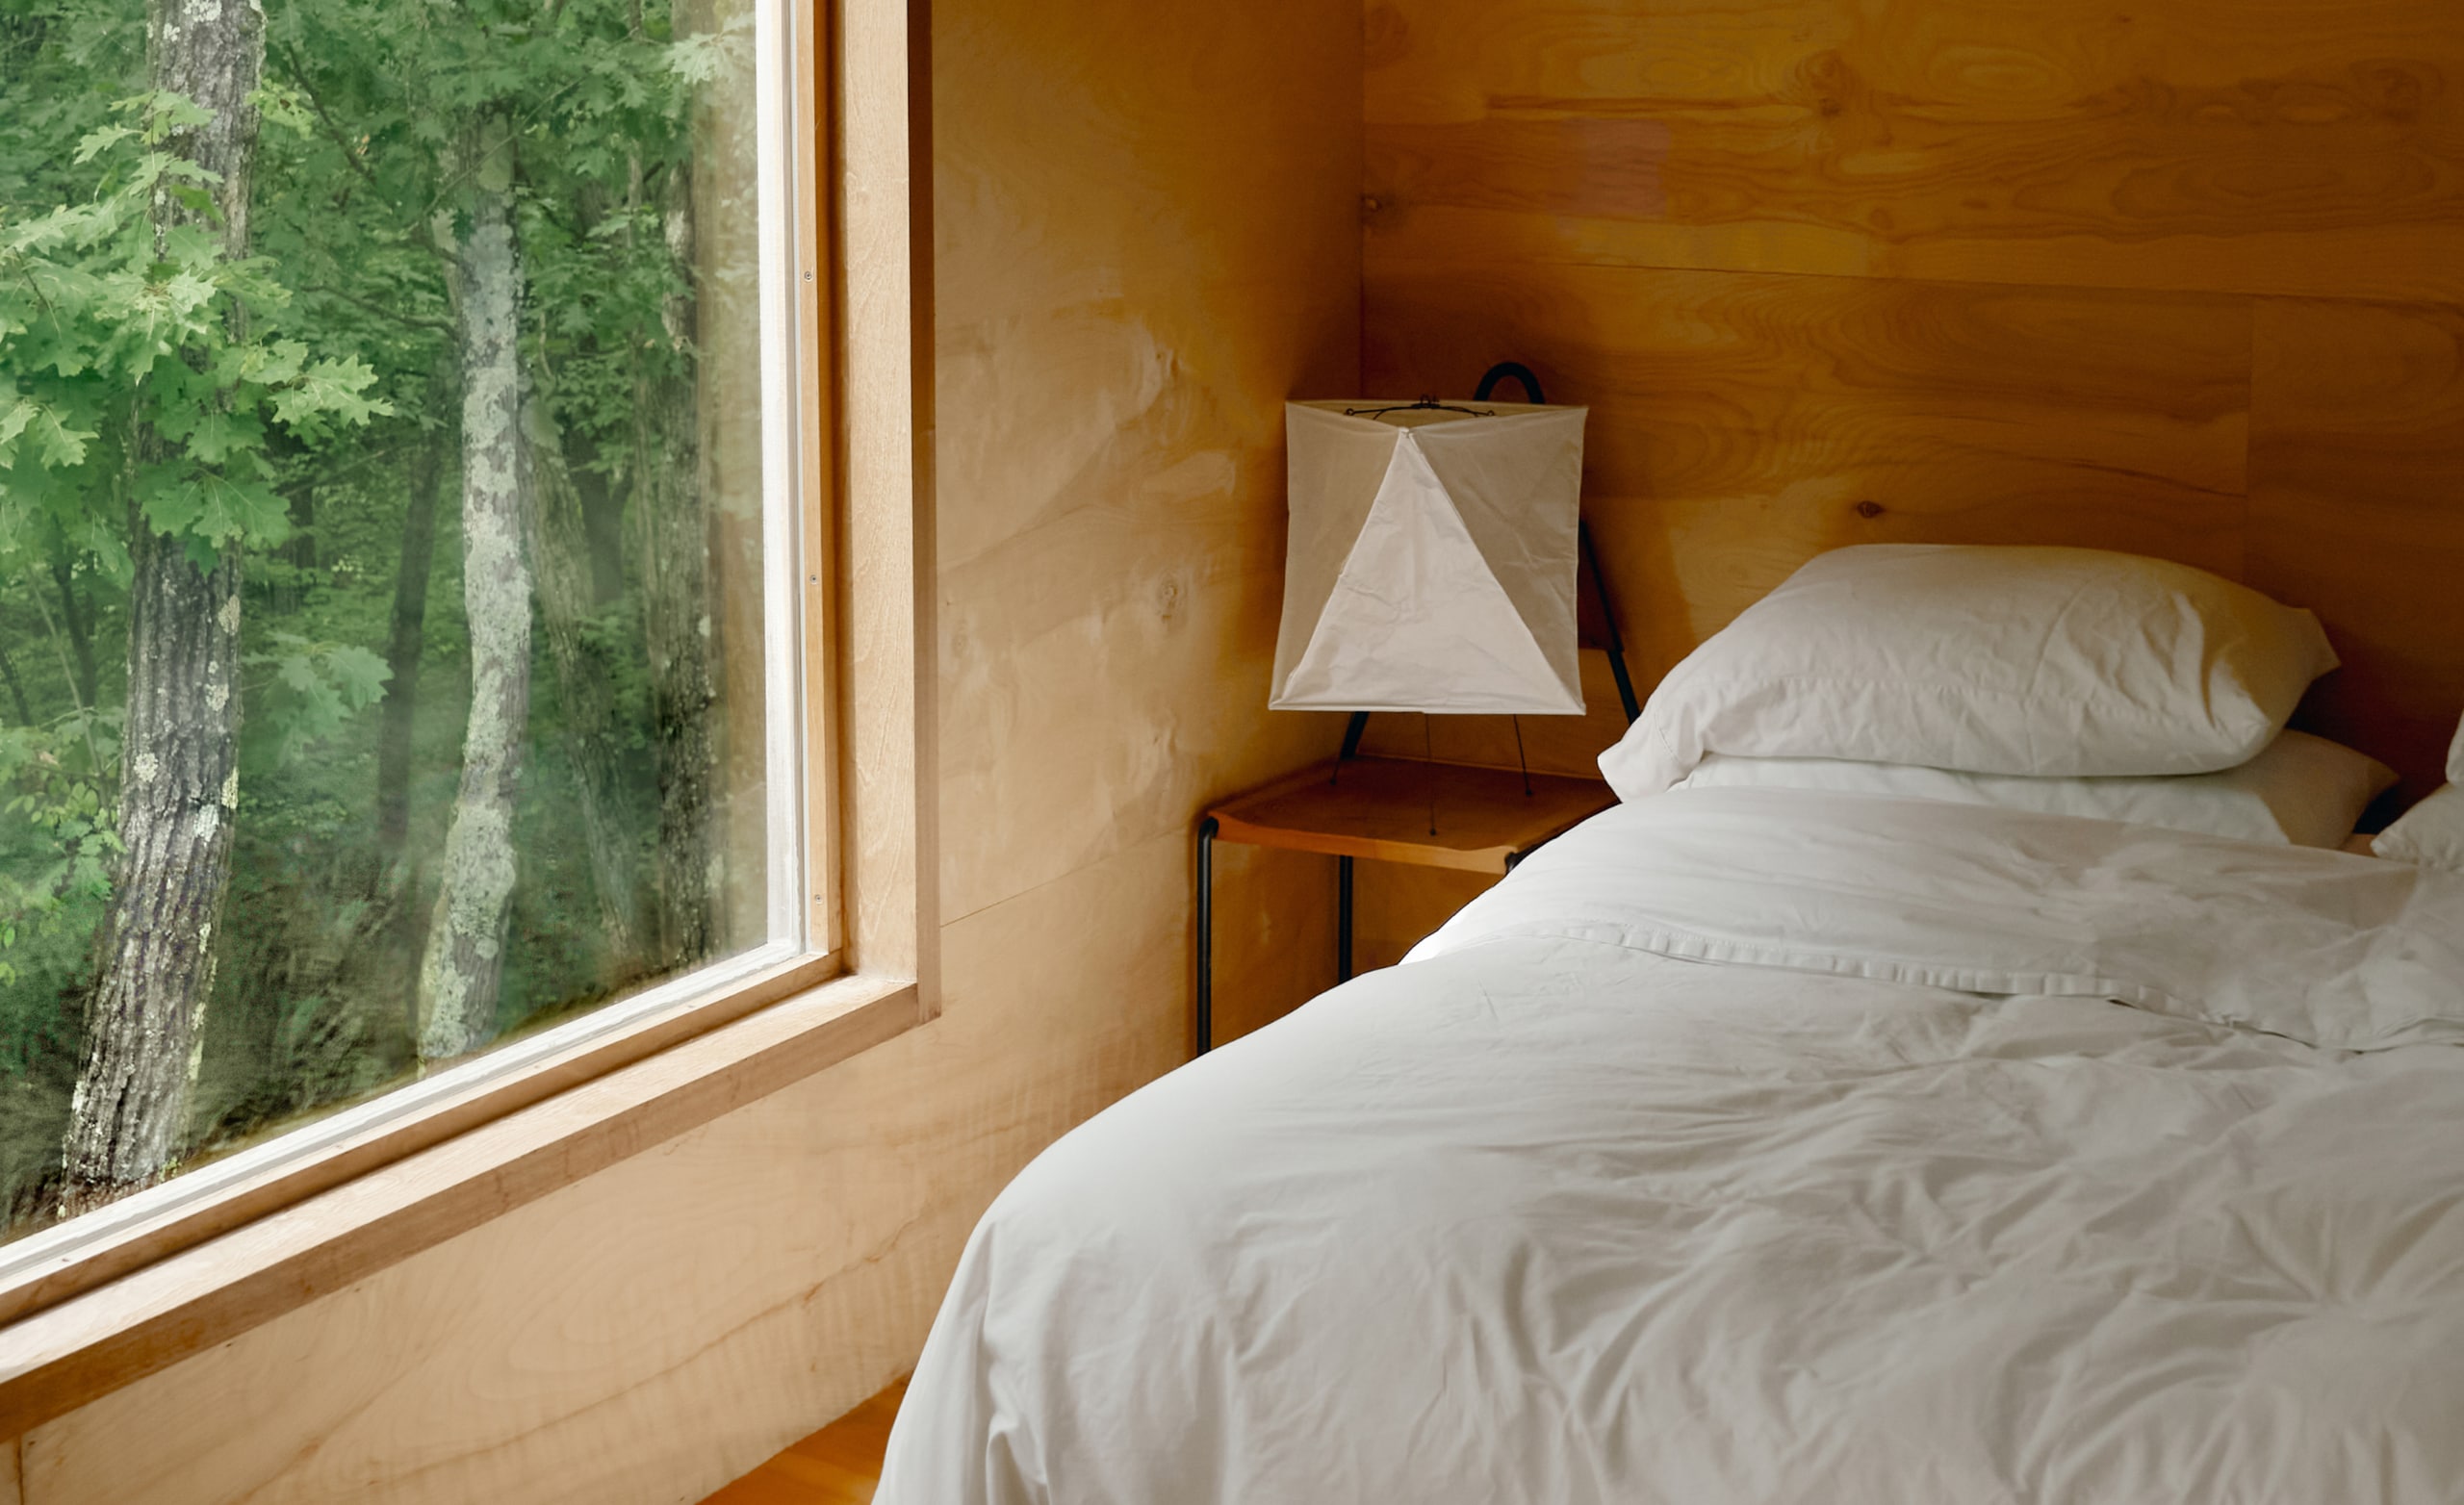 Spalnica z belimi rjuhami na sveže postlani postelji in velikim oknom, skozi katero se zunaj vidijo drevesa.